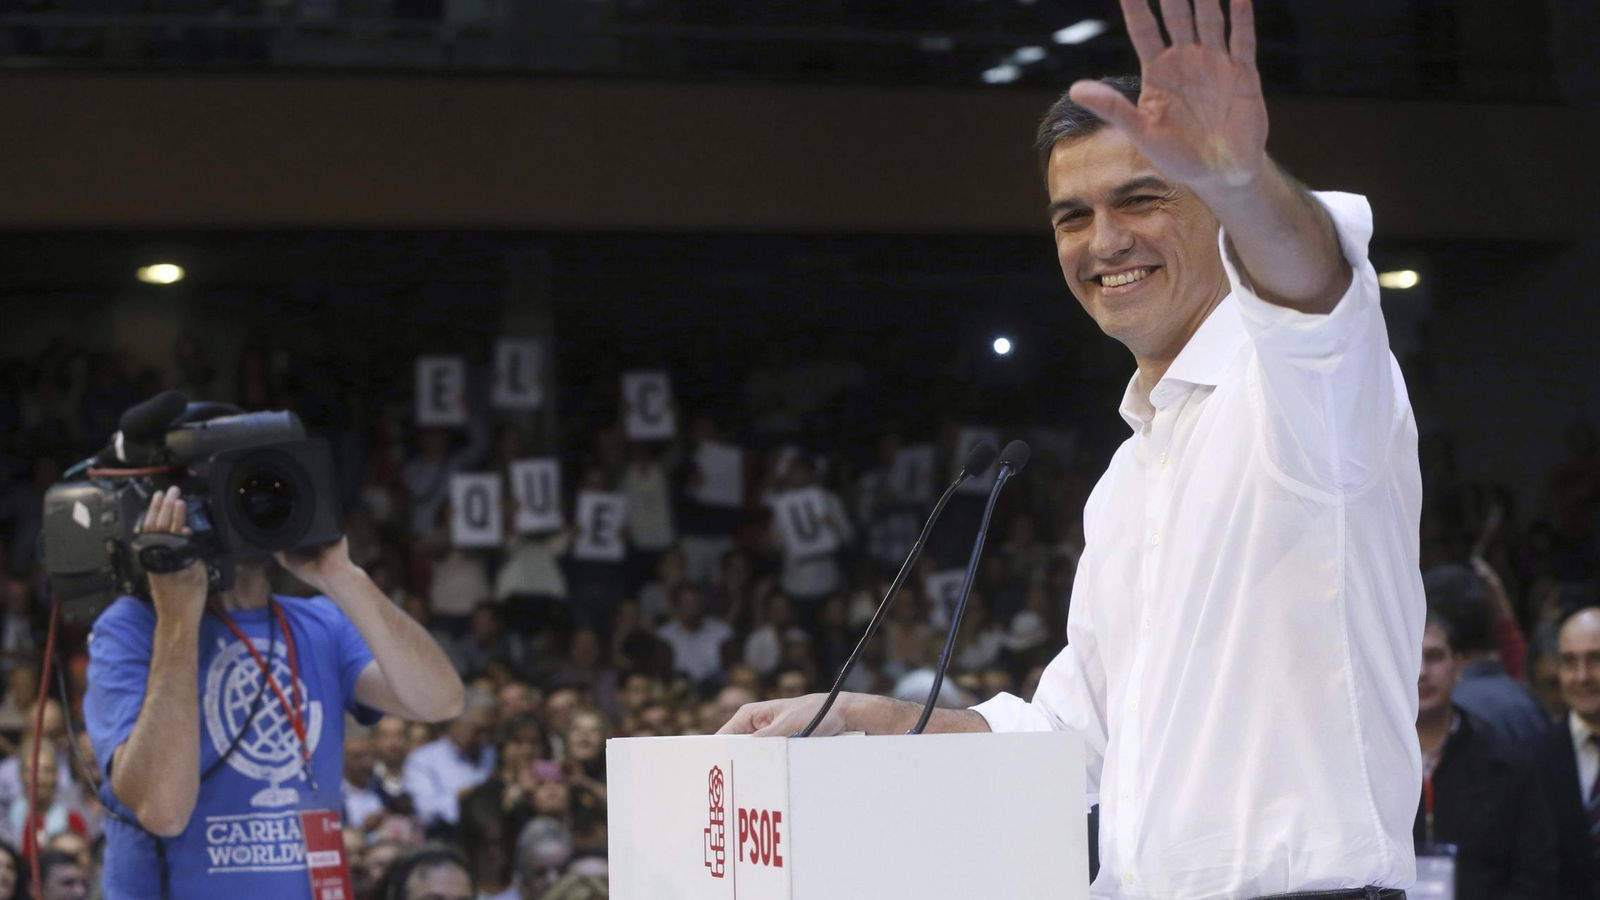 Foto: Pedro Sánchez, en la presentación de las candidaturas socialistas a las generales, este 18 de octubre en el polideportivo Magariños de Madrid. (EFE)